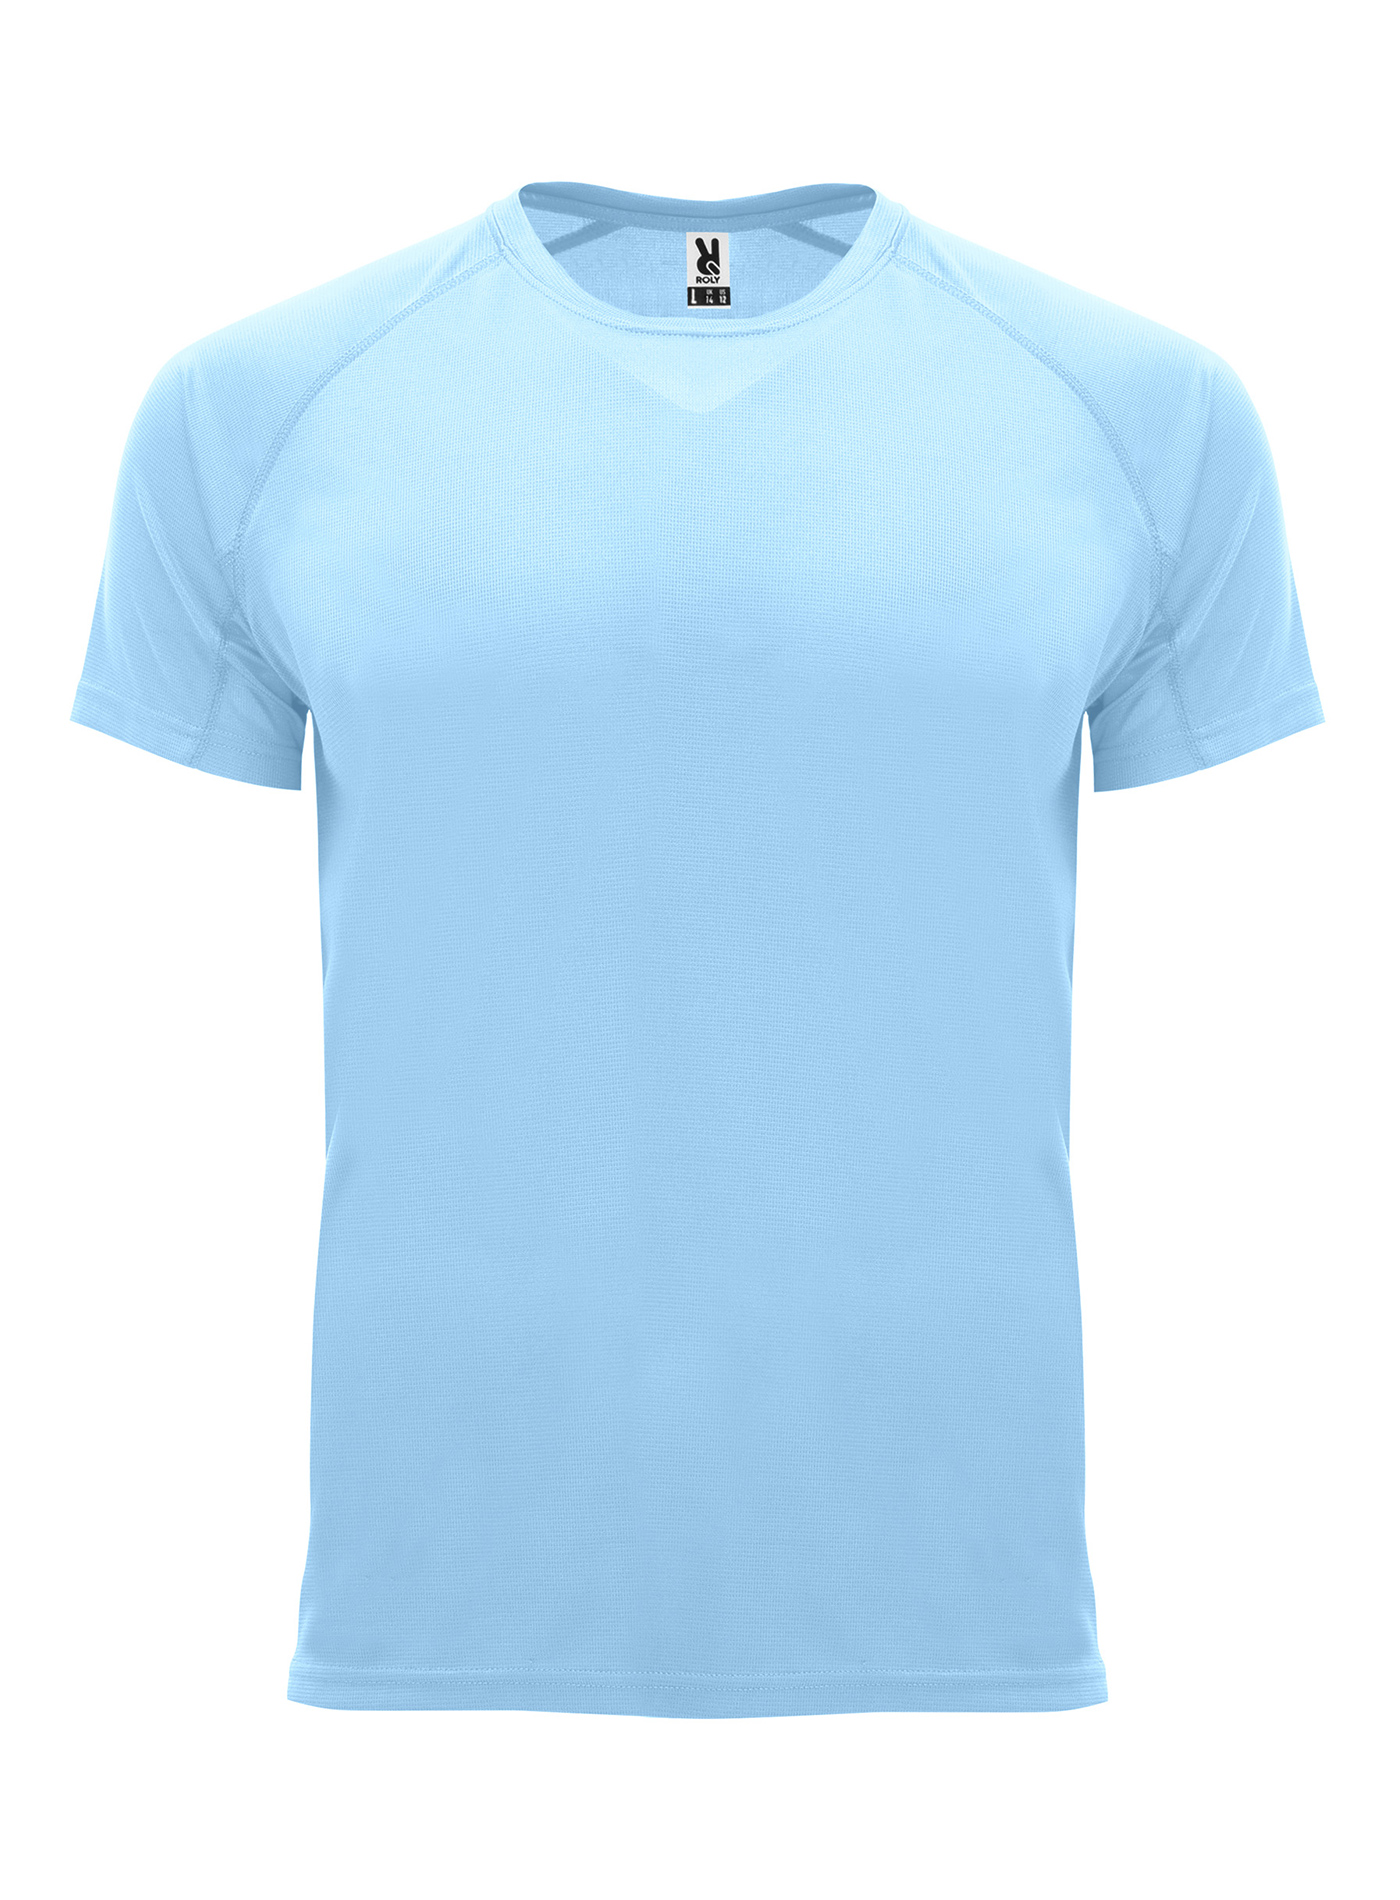 Pánské sportovní tričko Roly Bahrain - Blankytně modrá XL